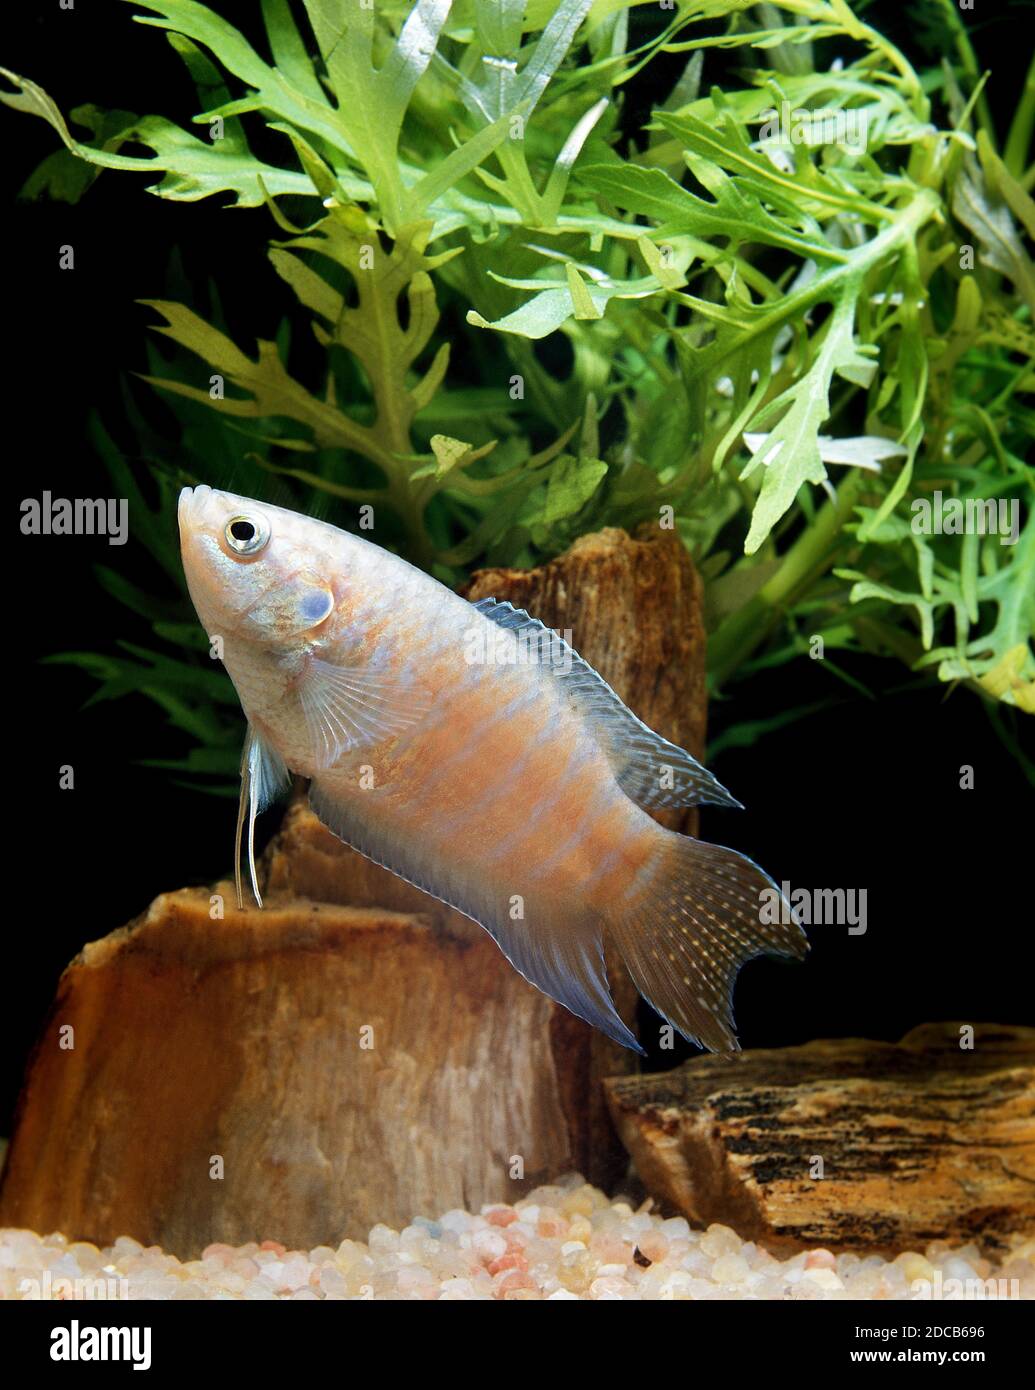 PARADISE FISH macropodus opercularis, ADULT Stock Photo